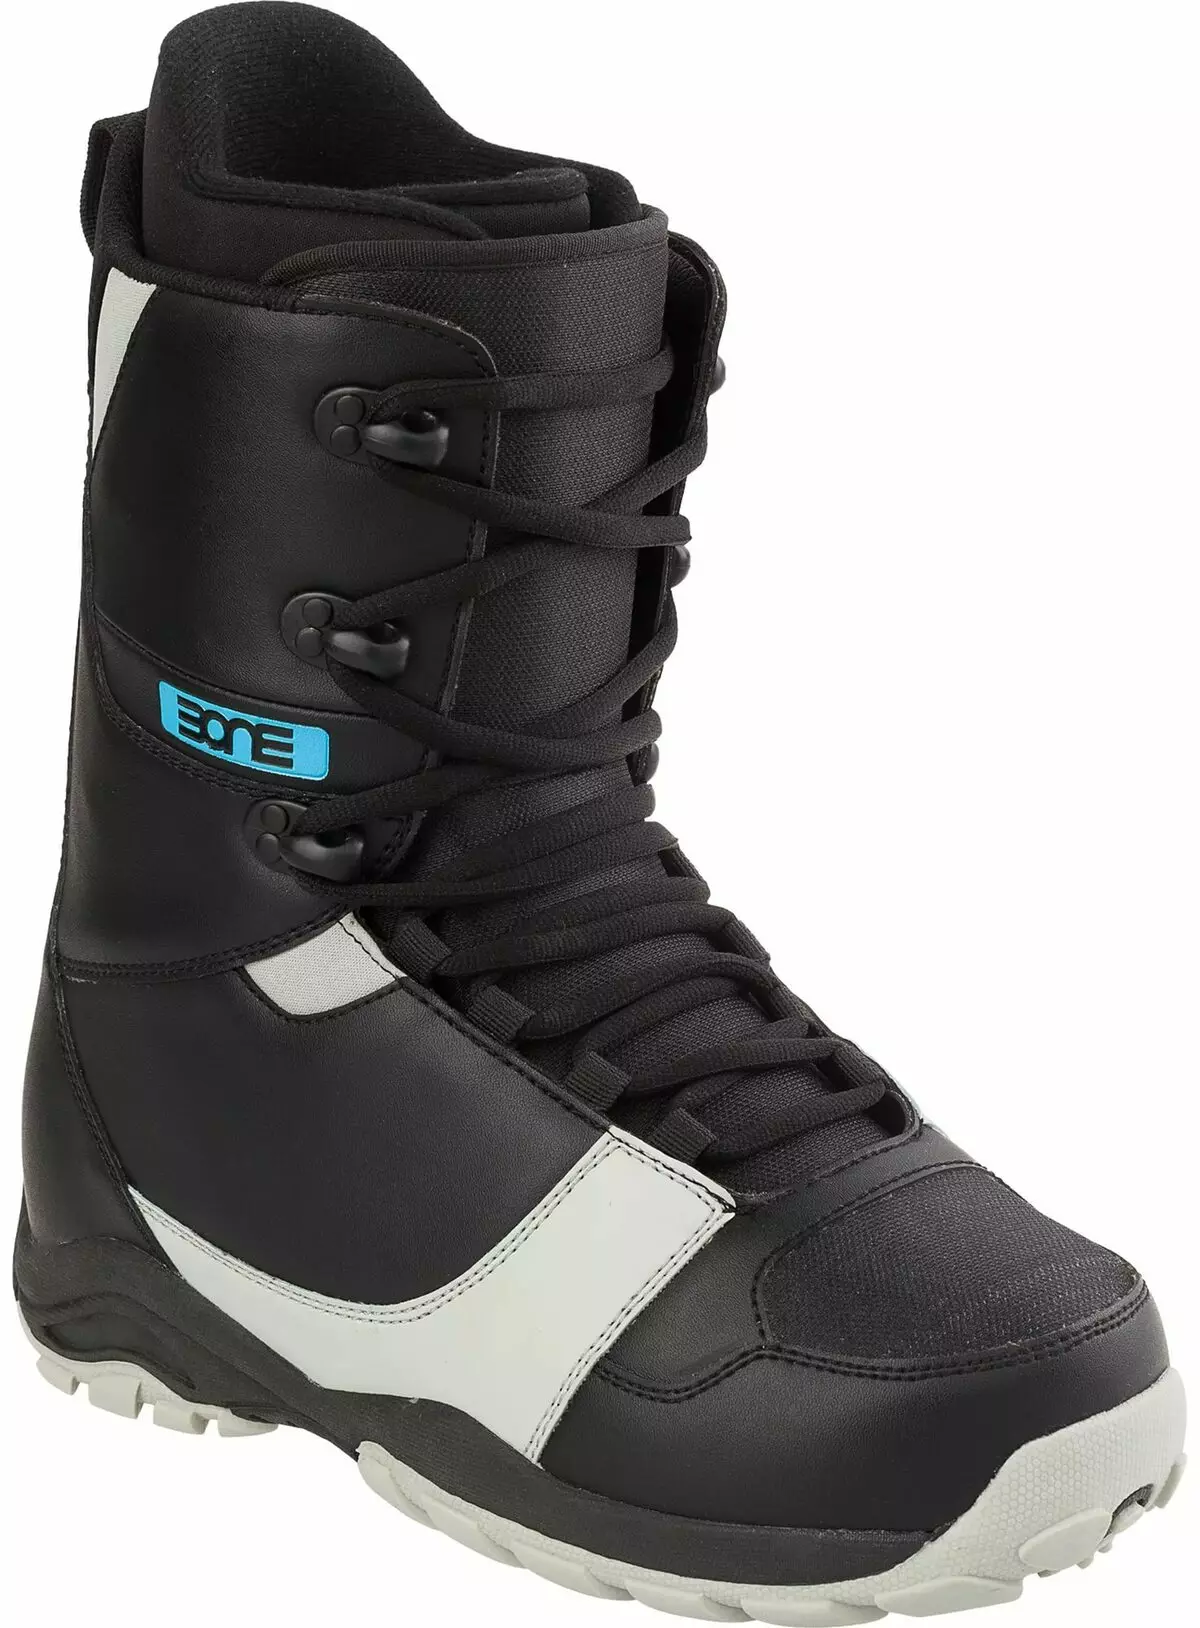 Snowboardové boty (119 fotek): Jak si vybrat snowboardové boty pro ženy, model Nike, adidas a další populární značky 15127_94